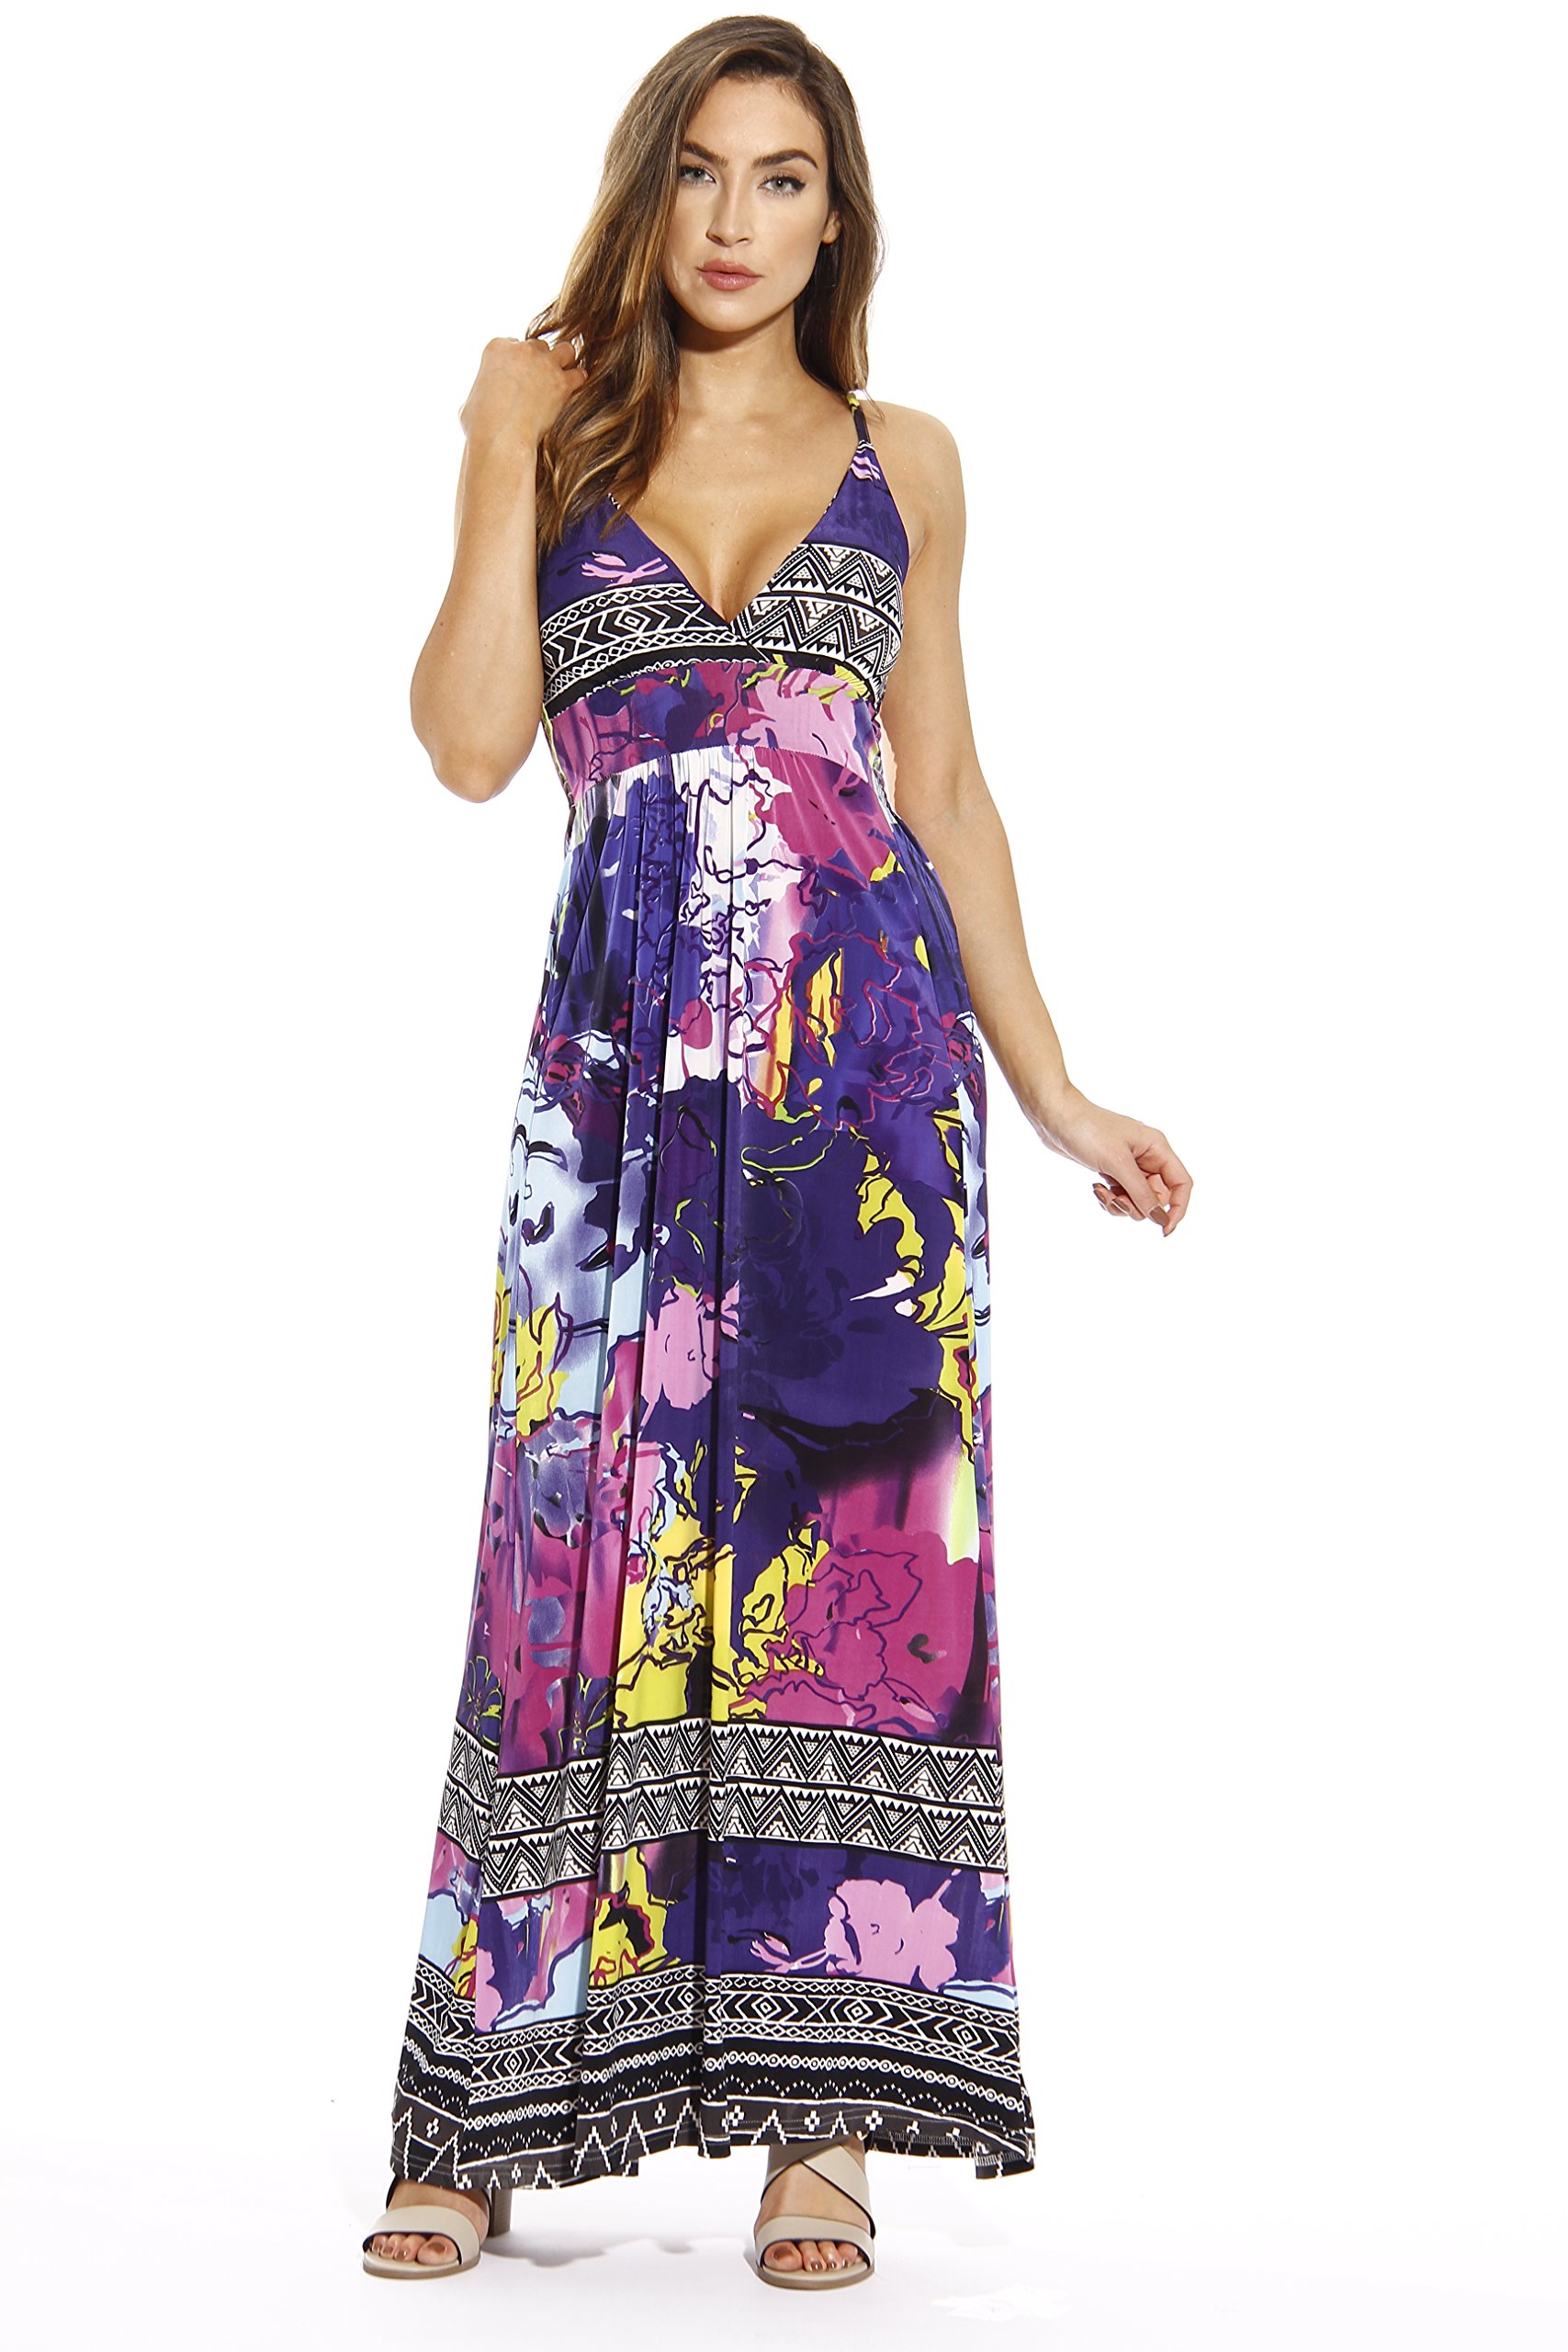 Just Love Maxi Dresses for Women / Summer Dresses eBay